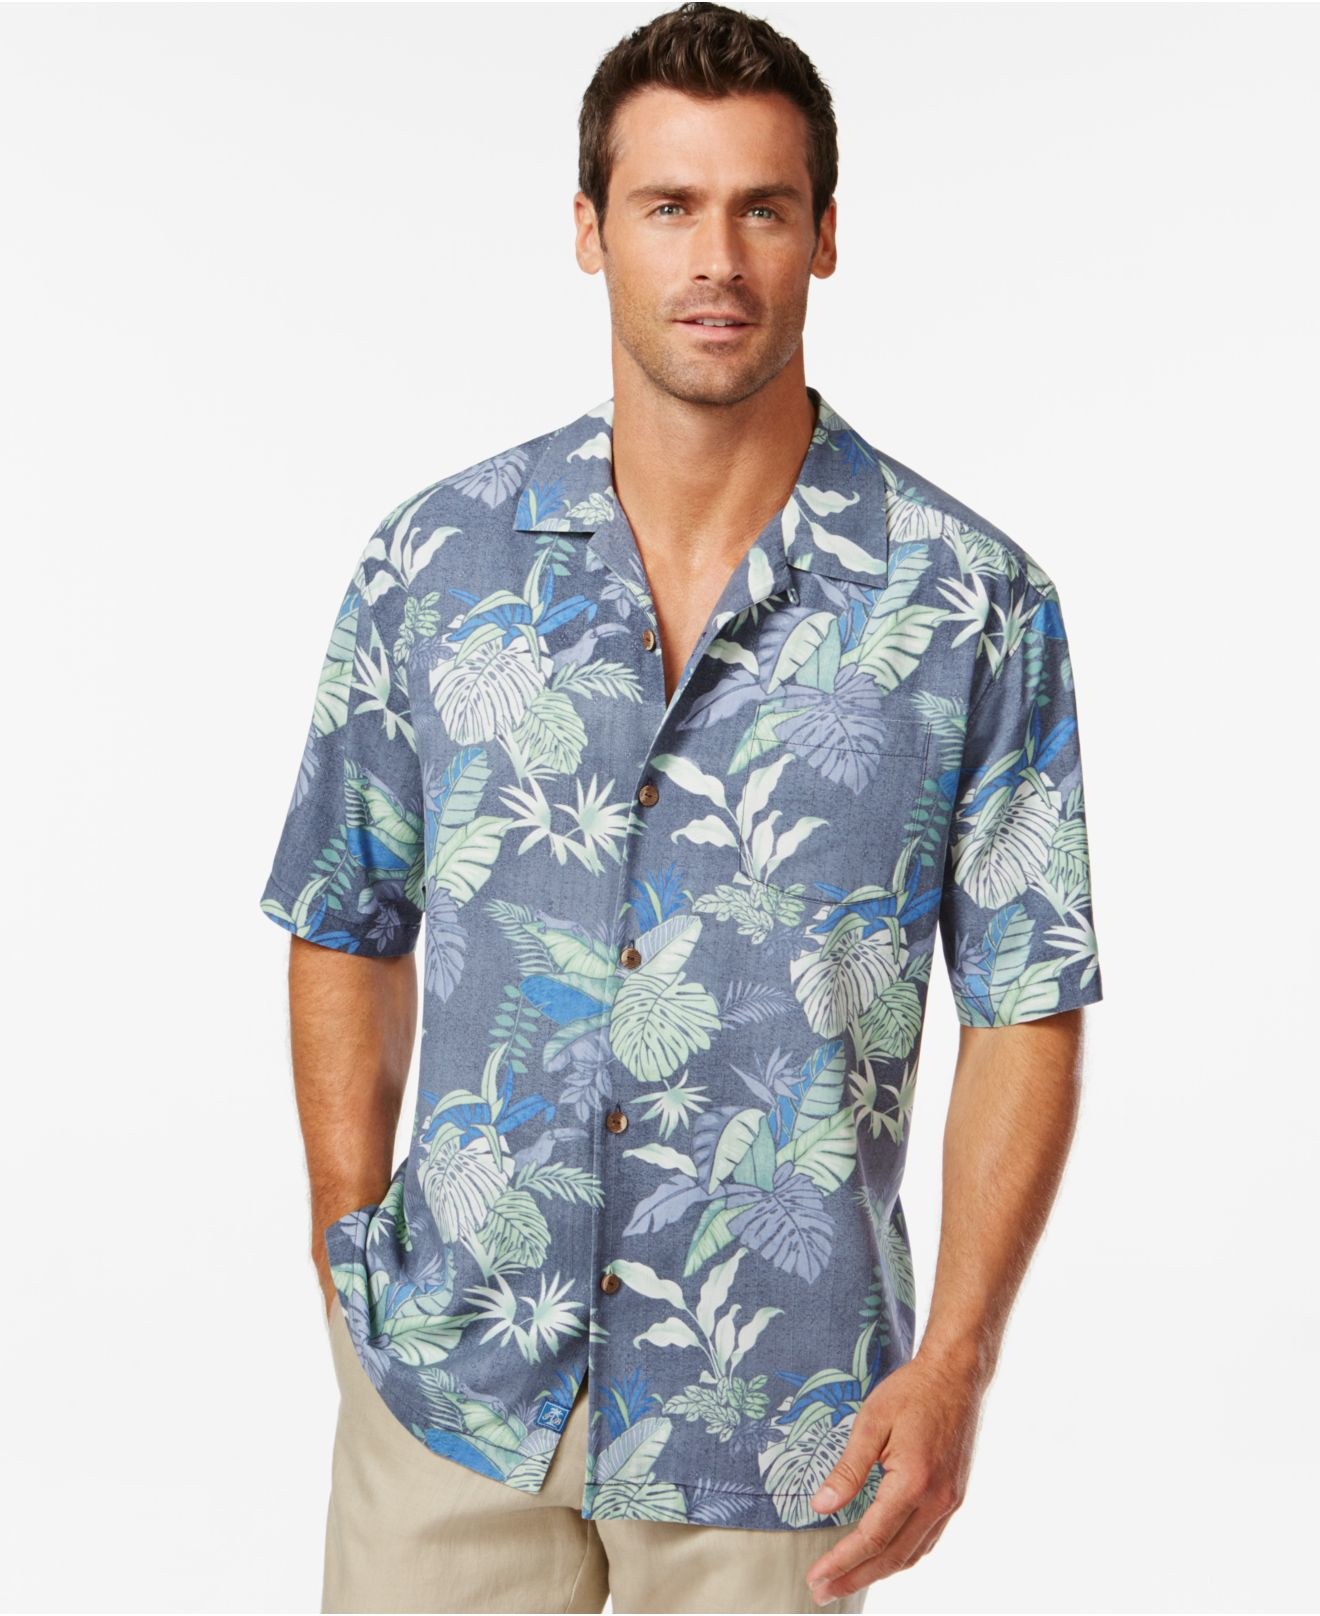 tony bahama shirts